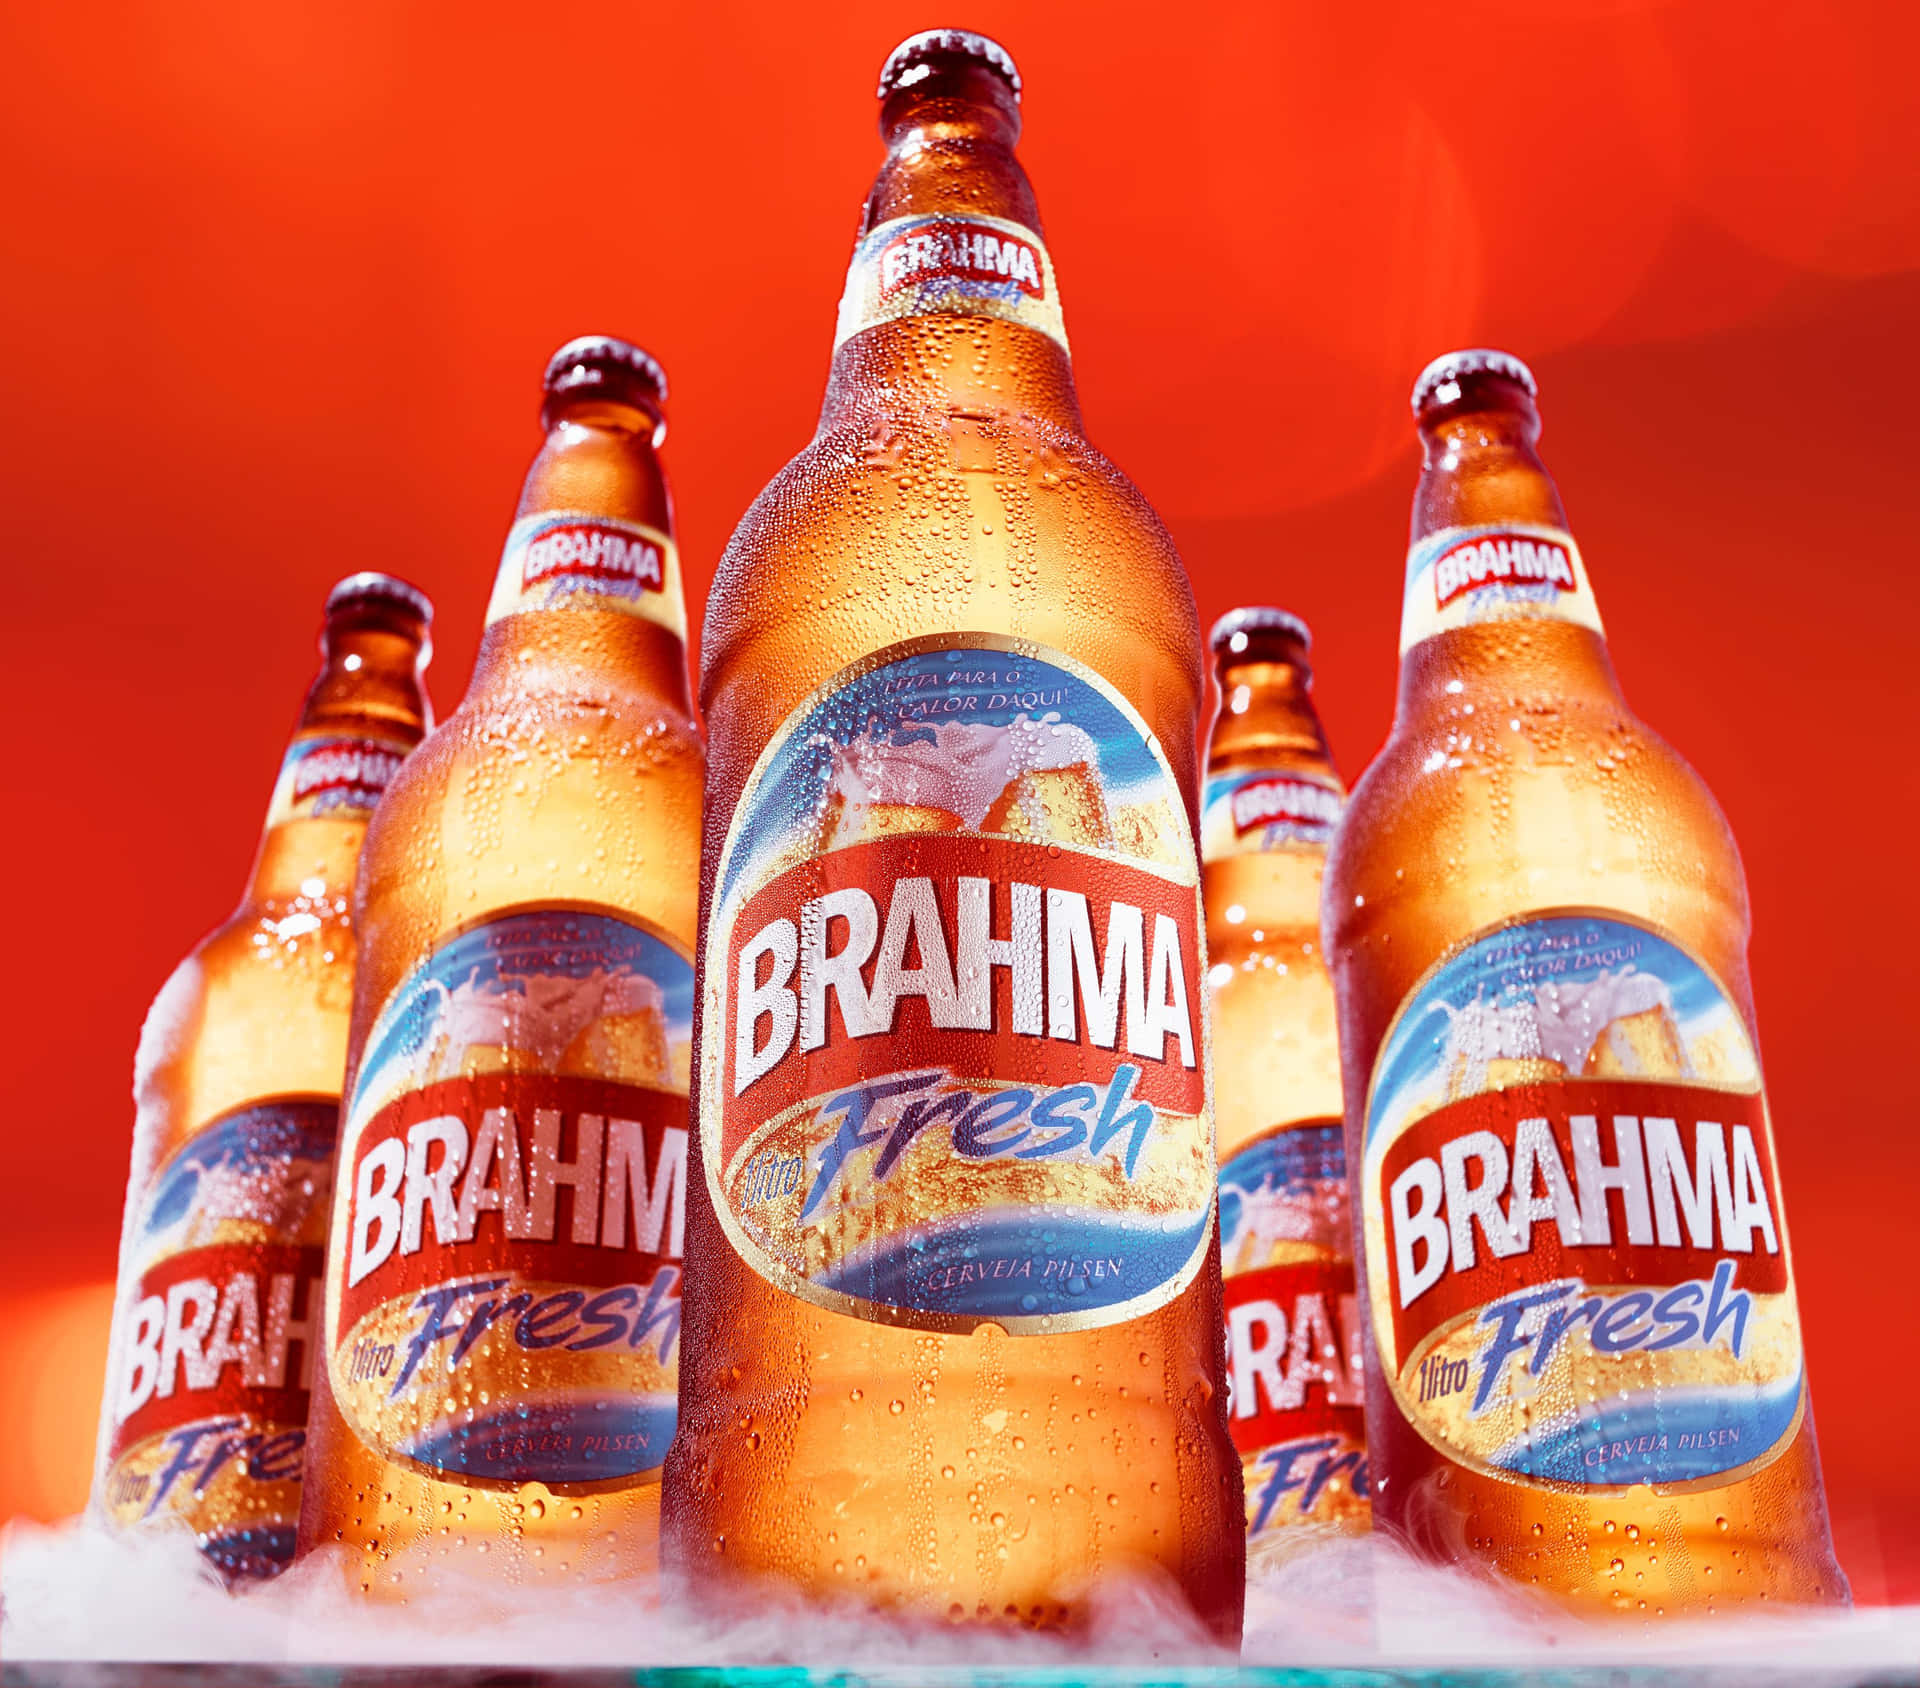 Brazilian Brahma Fresh Pilsen Beer Bottles Wallpaper